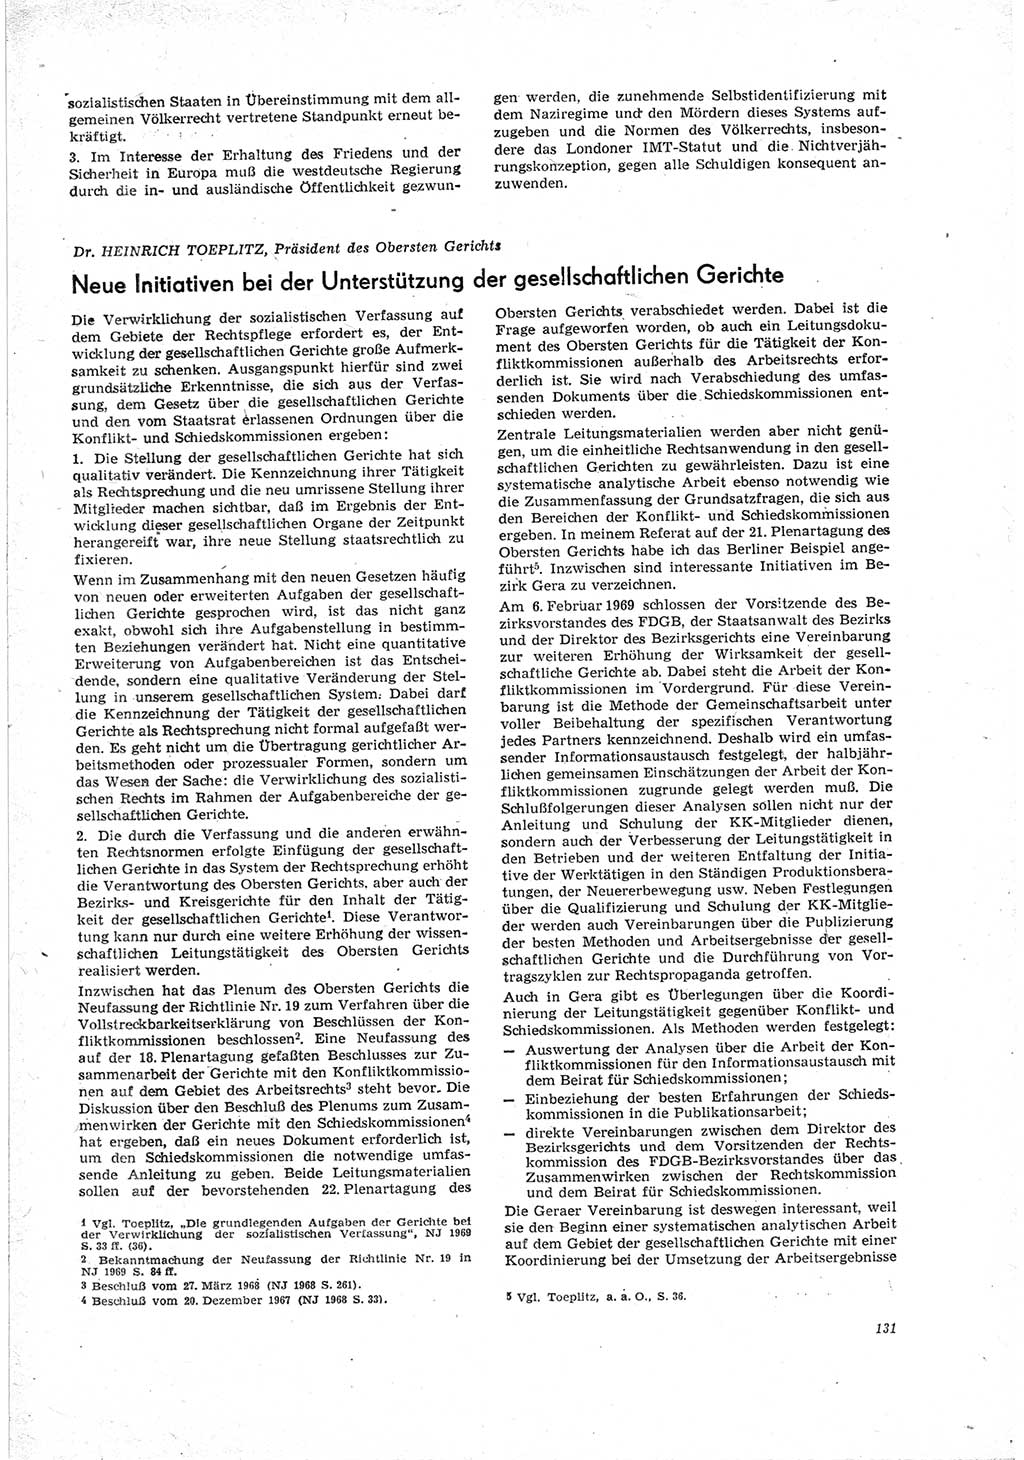 Neue Justiz (NJ), Zeitschrift für Recht und Rechtswissenschaft [Deutsche Demokratische Republik (DDR)], 23. Jahrgang 1969, Seite 131 (NJ DDR 1969, S. 131)